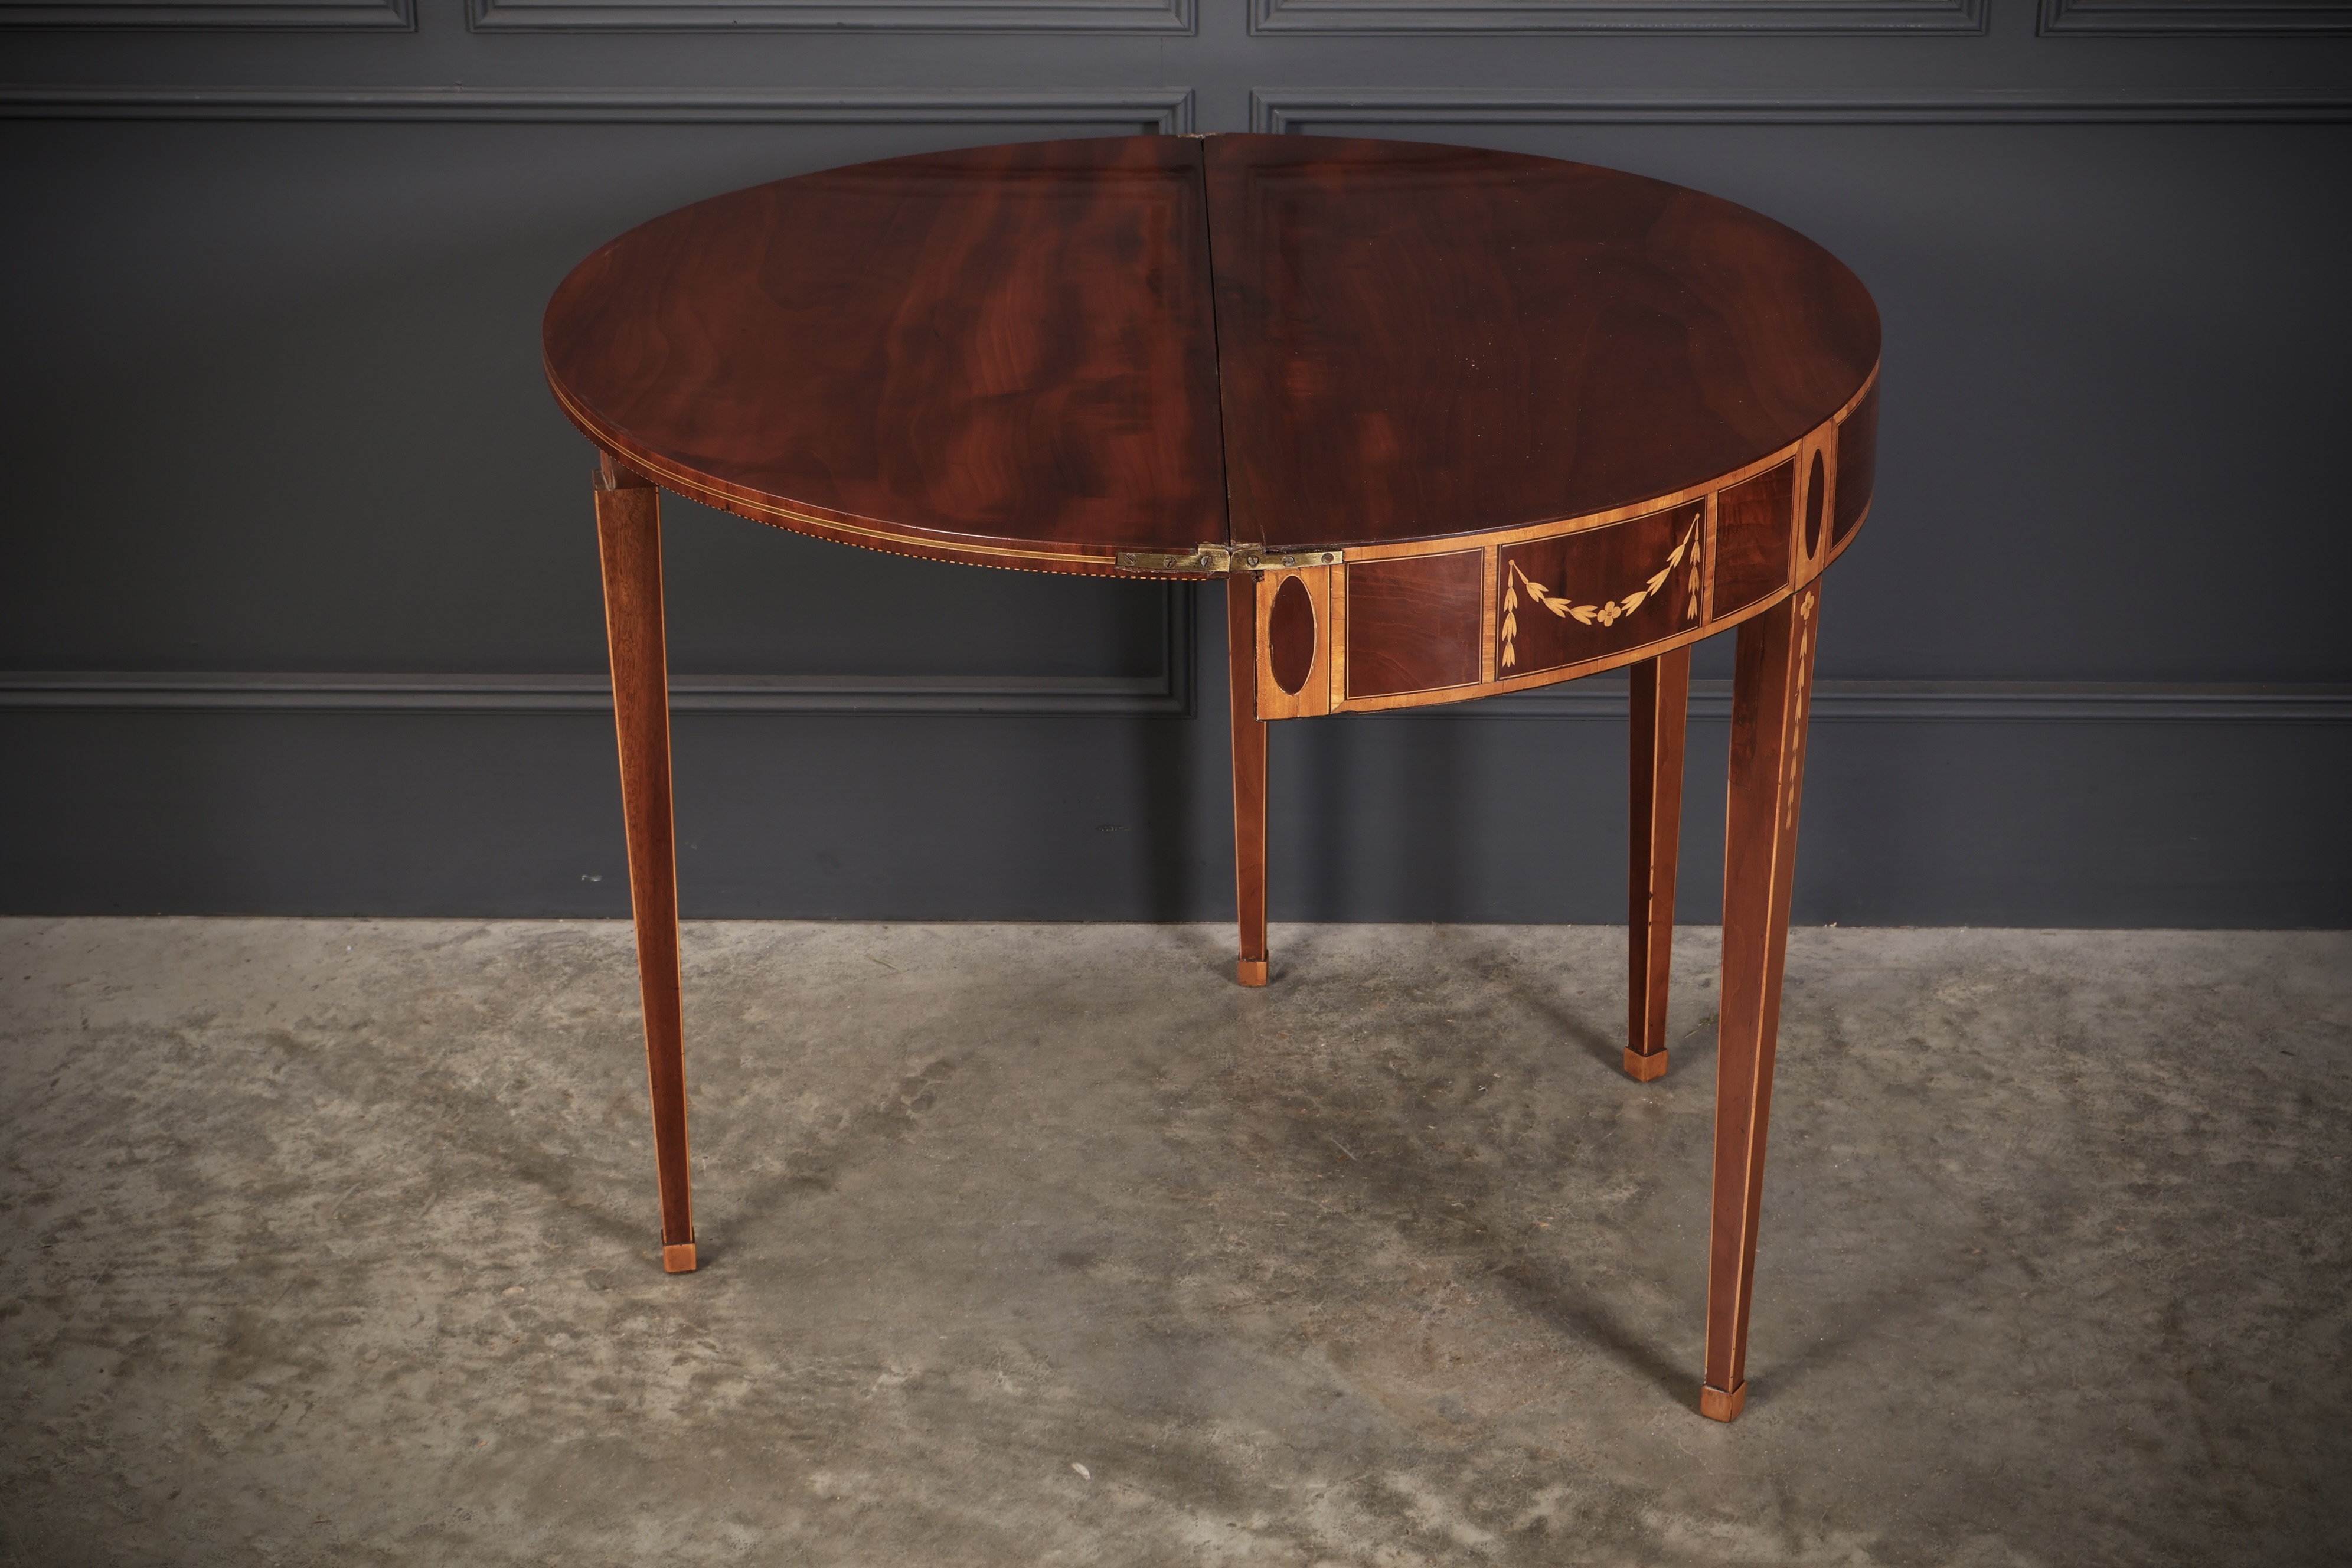 Rare 18th Century Marquetry Inlaid Tea Table 18th century Antique Furniture 16